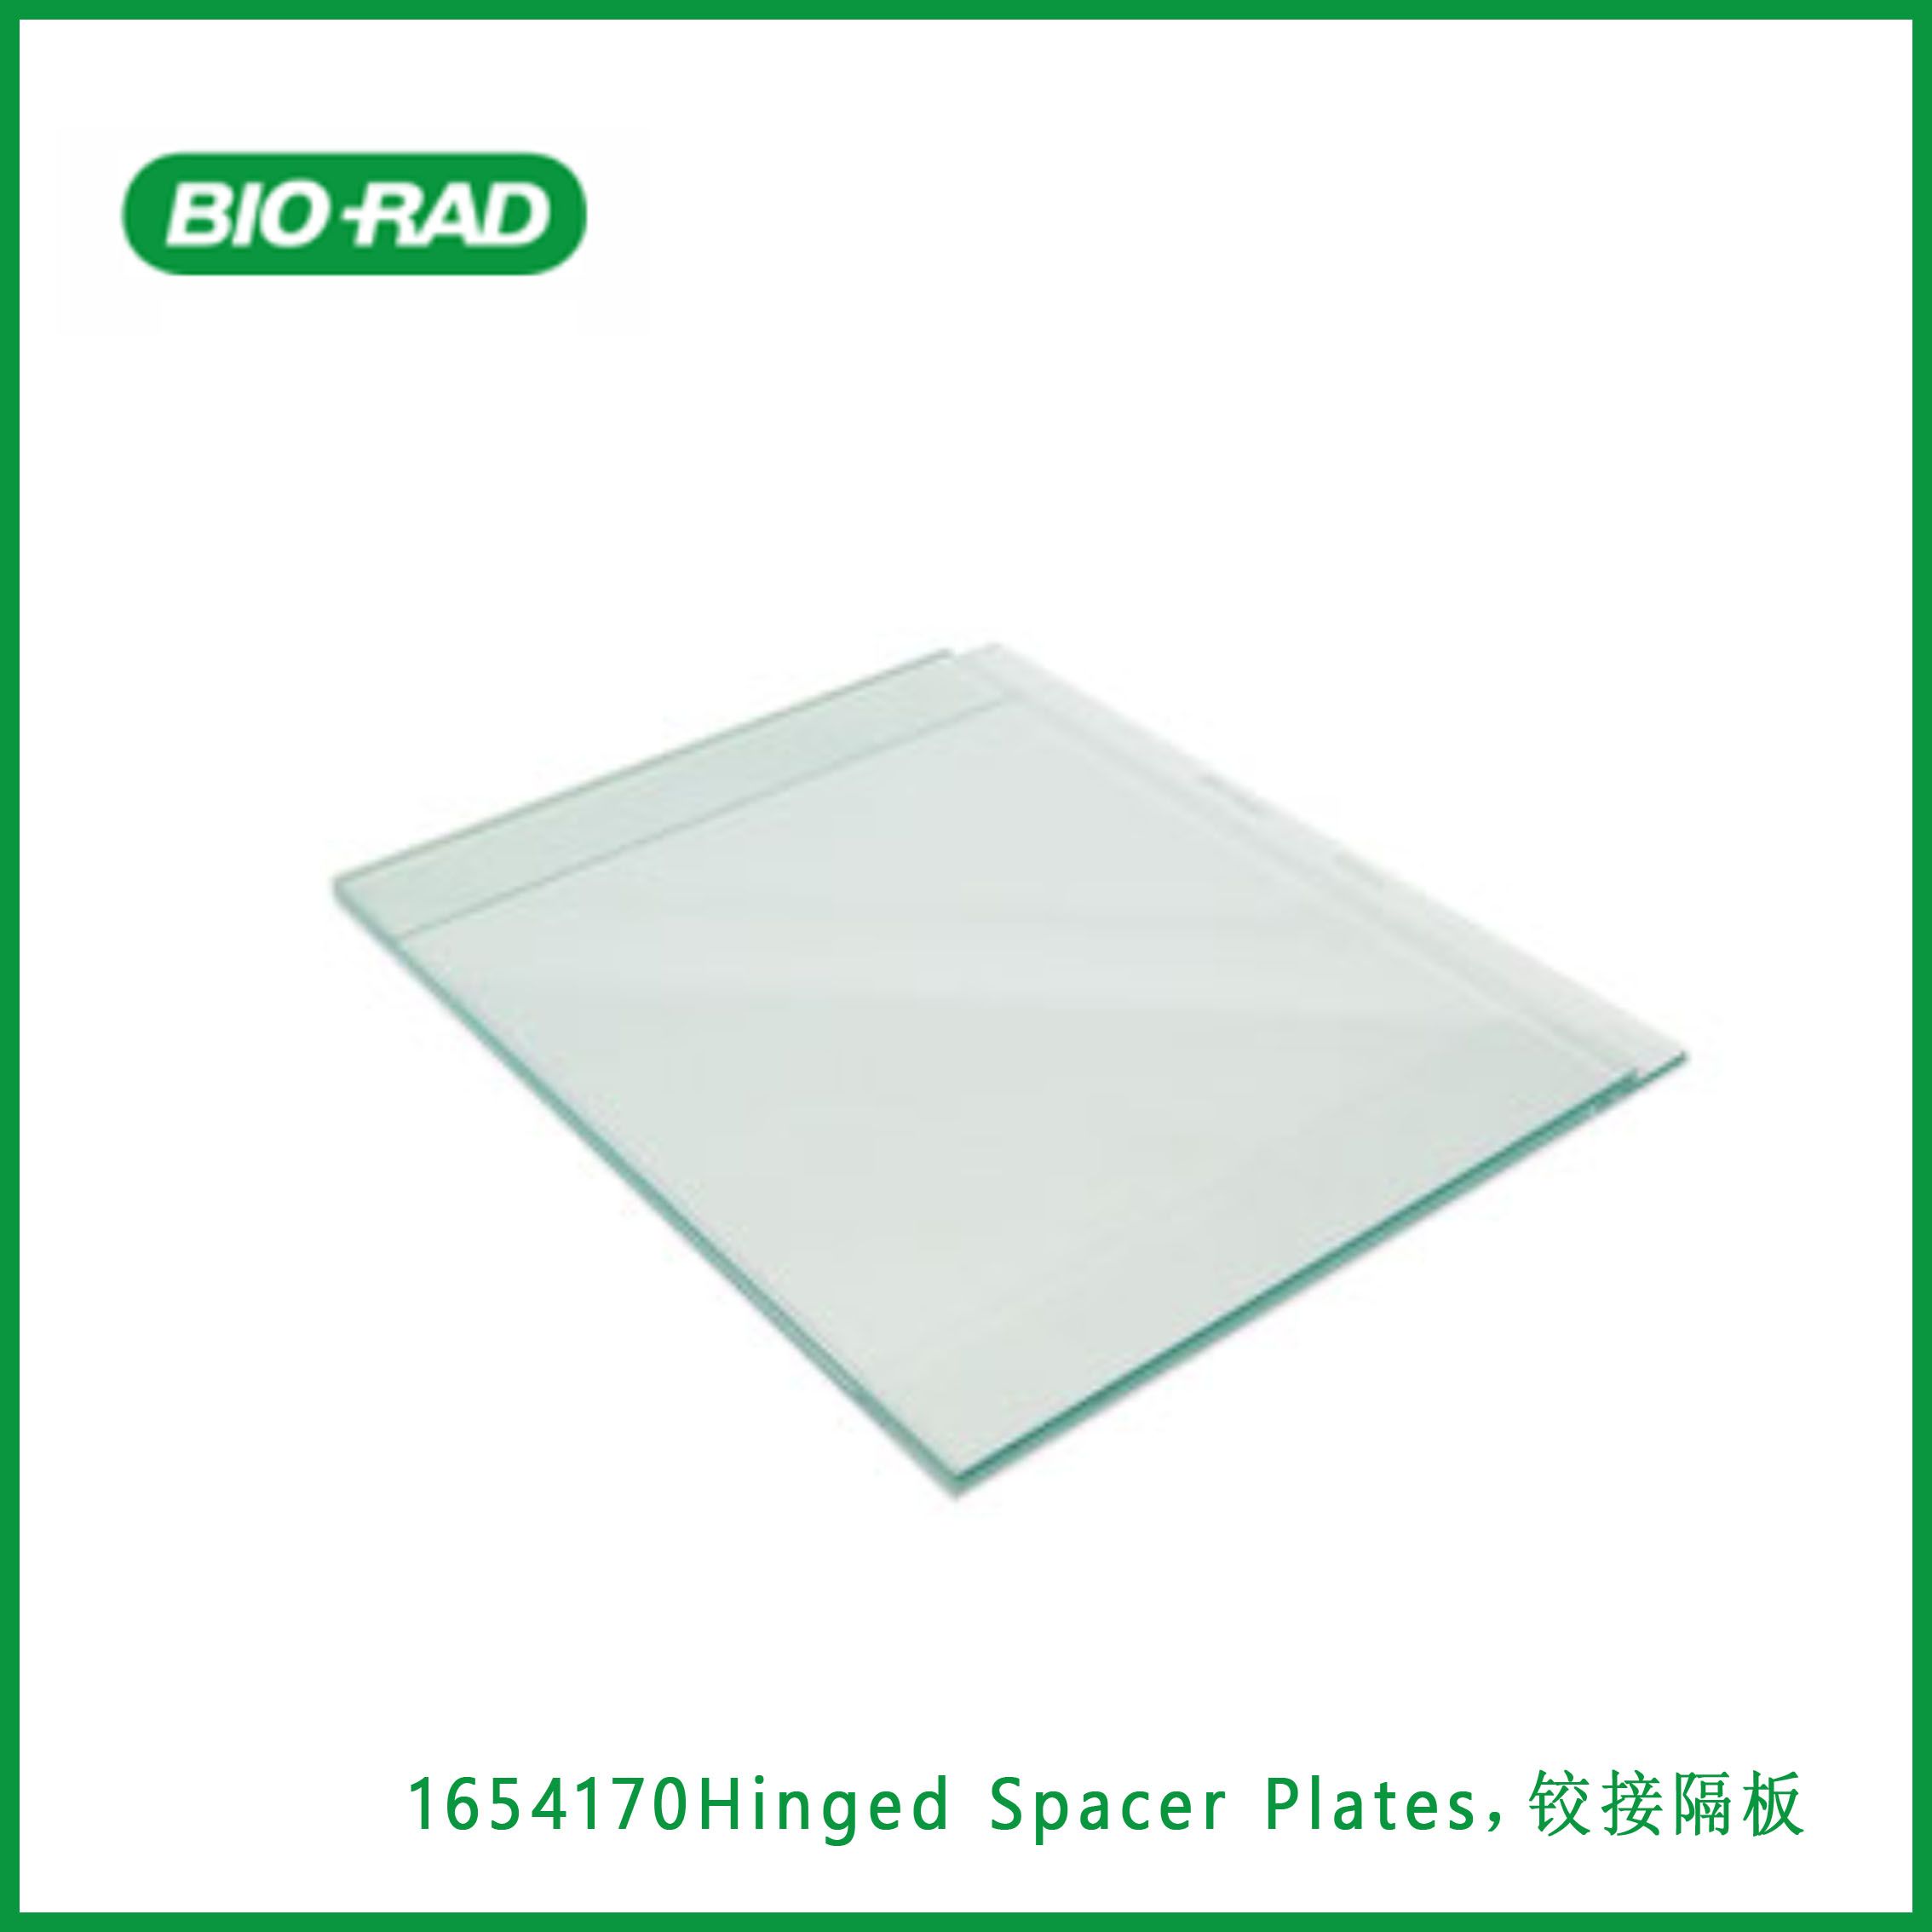 伯乐Bio-Rad1654170Hinged Spacer Plates，铰接隔板，现货